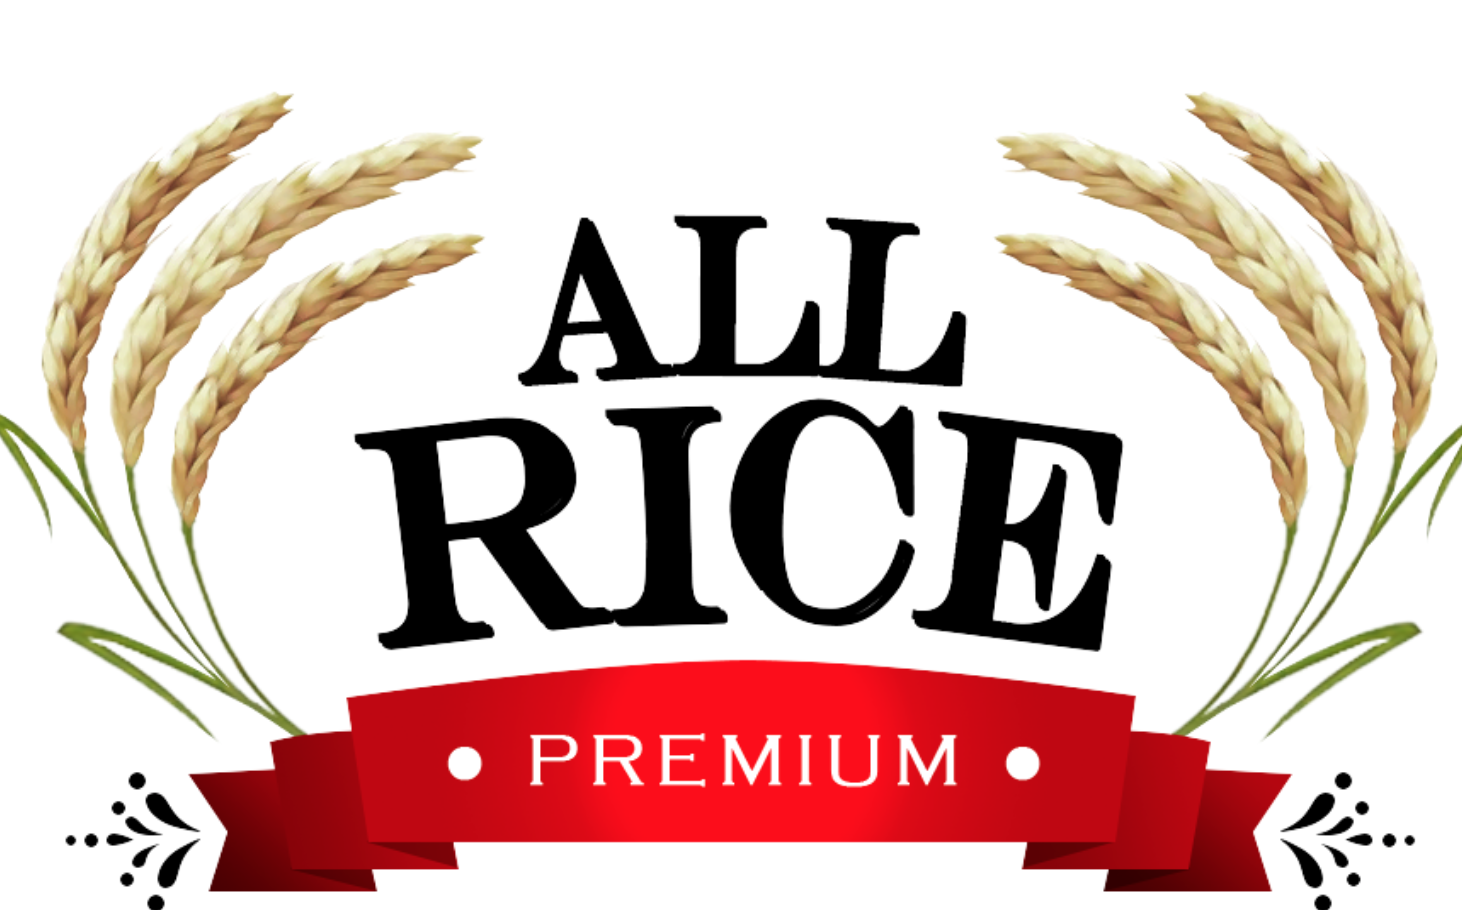 All Rice Premium